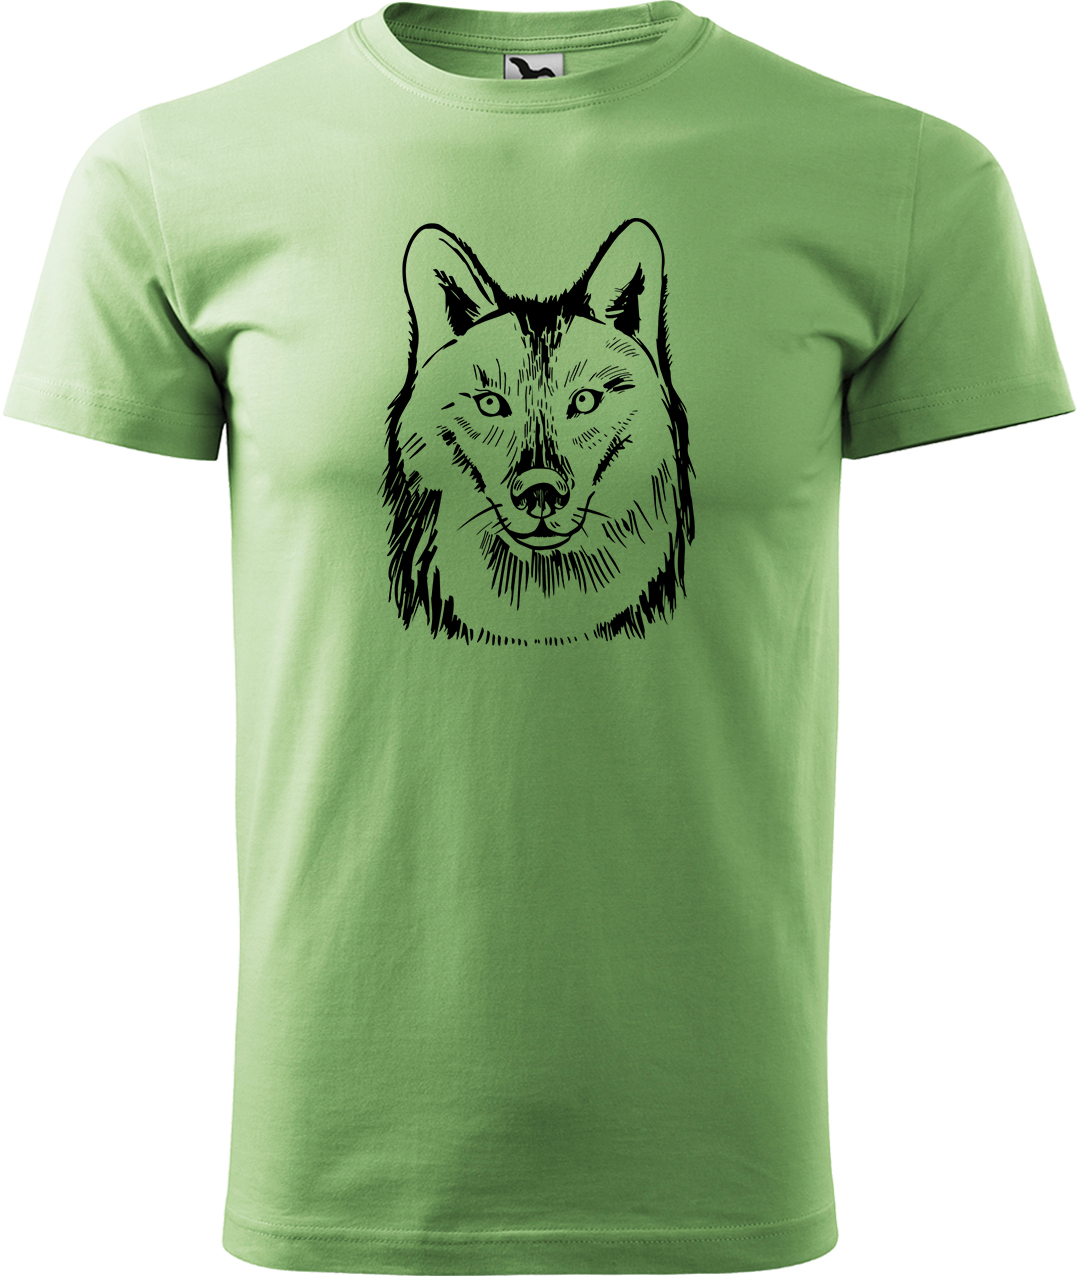 Pánské tričko s vlkem - Kresba vlka Velikost: XL, Barva: Trávově zelená (39), Střih: pánský